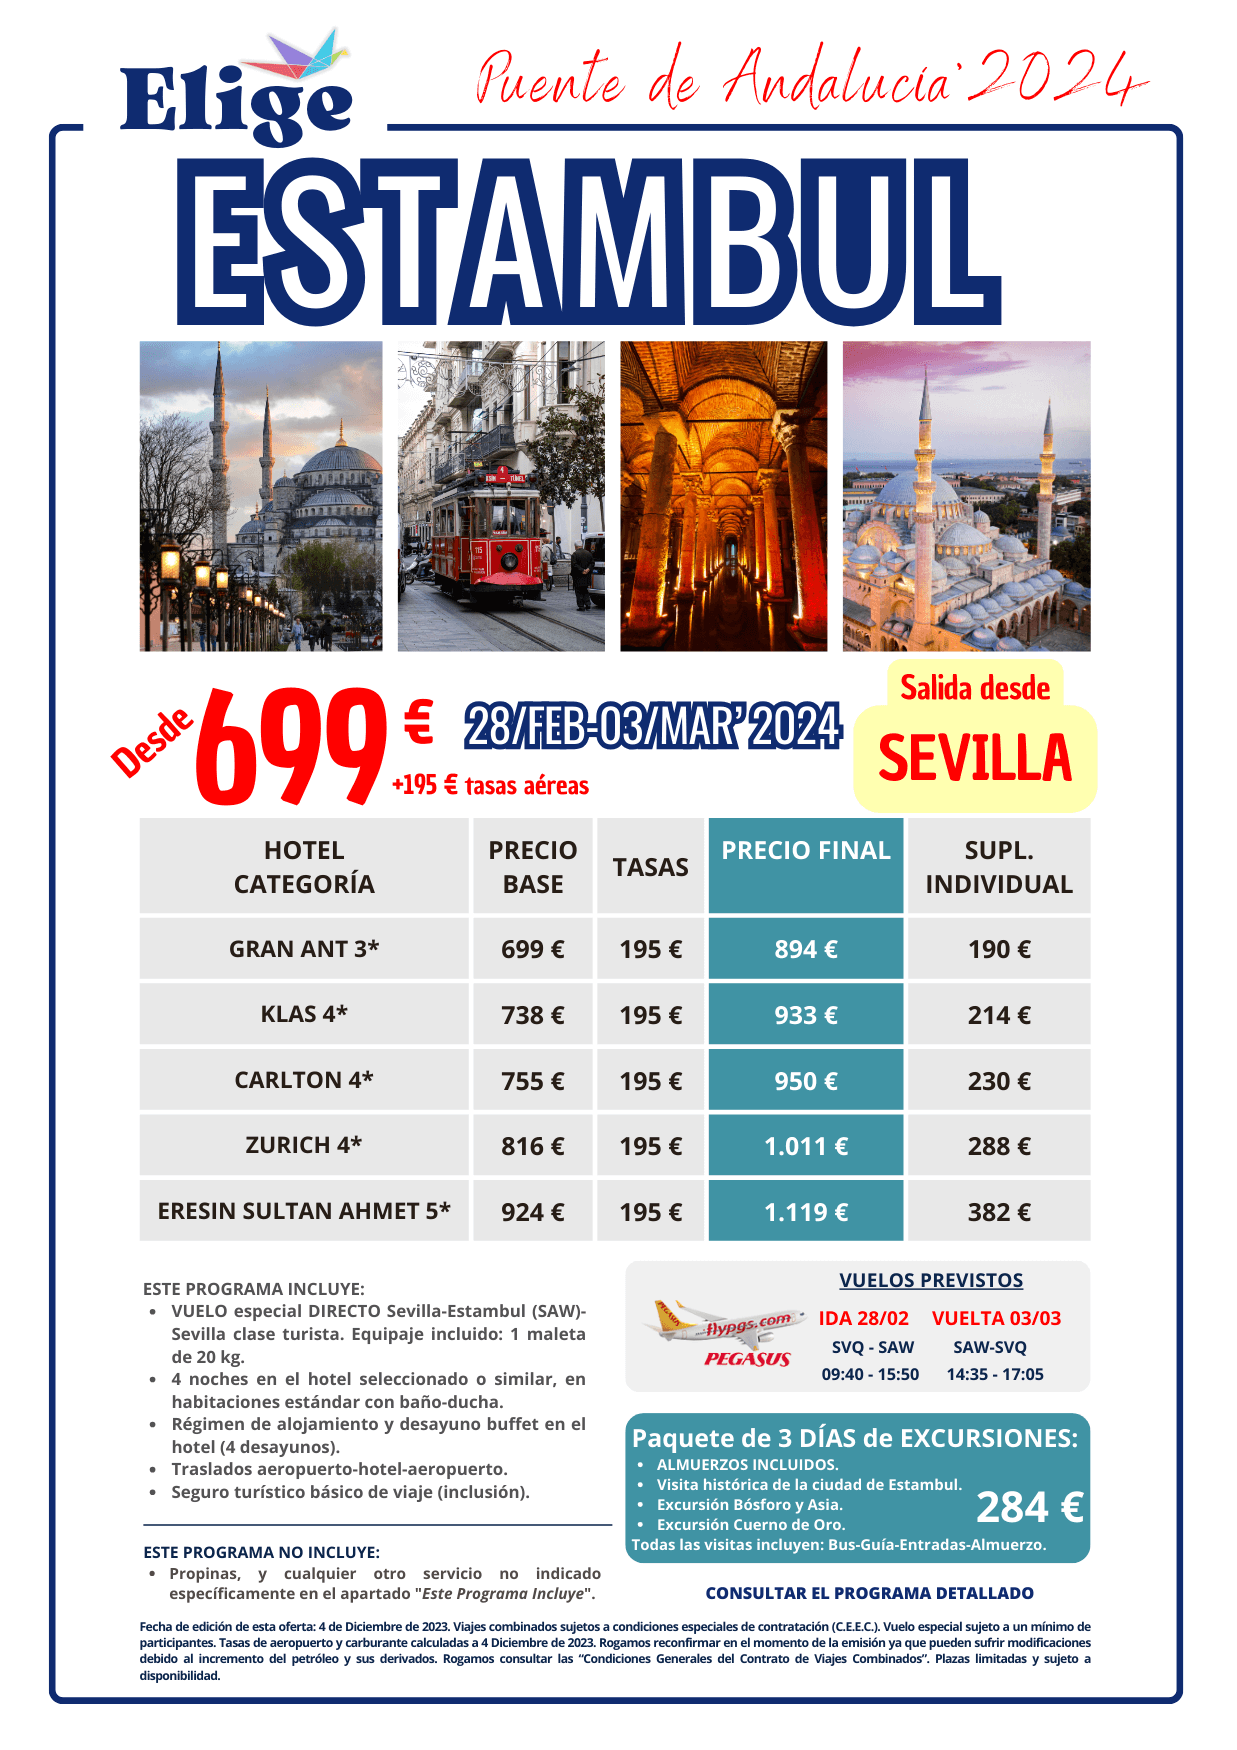 ESTAMBUL con salida desde Sevilla, oferta especial Puente de Andalucía 2024, con vuelo especial directo, 4 noches de hotel en AD y traslados para Agencias de Viajes con Elige Tu Viaje